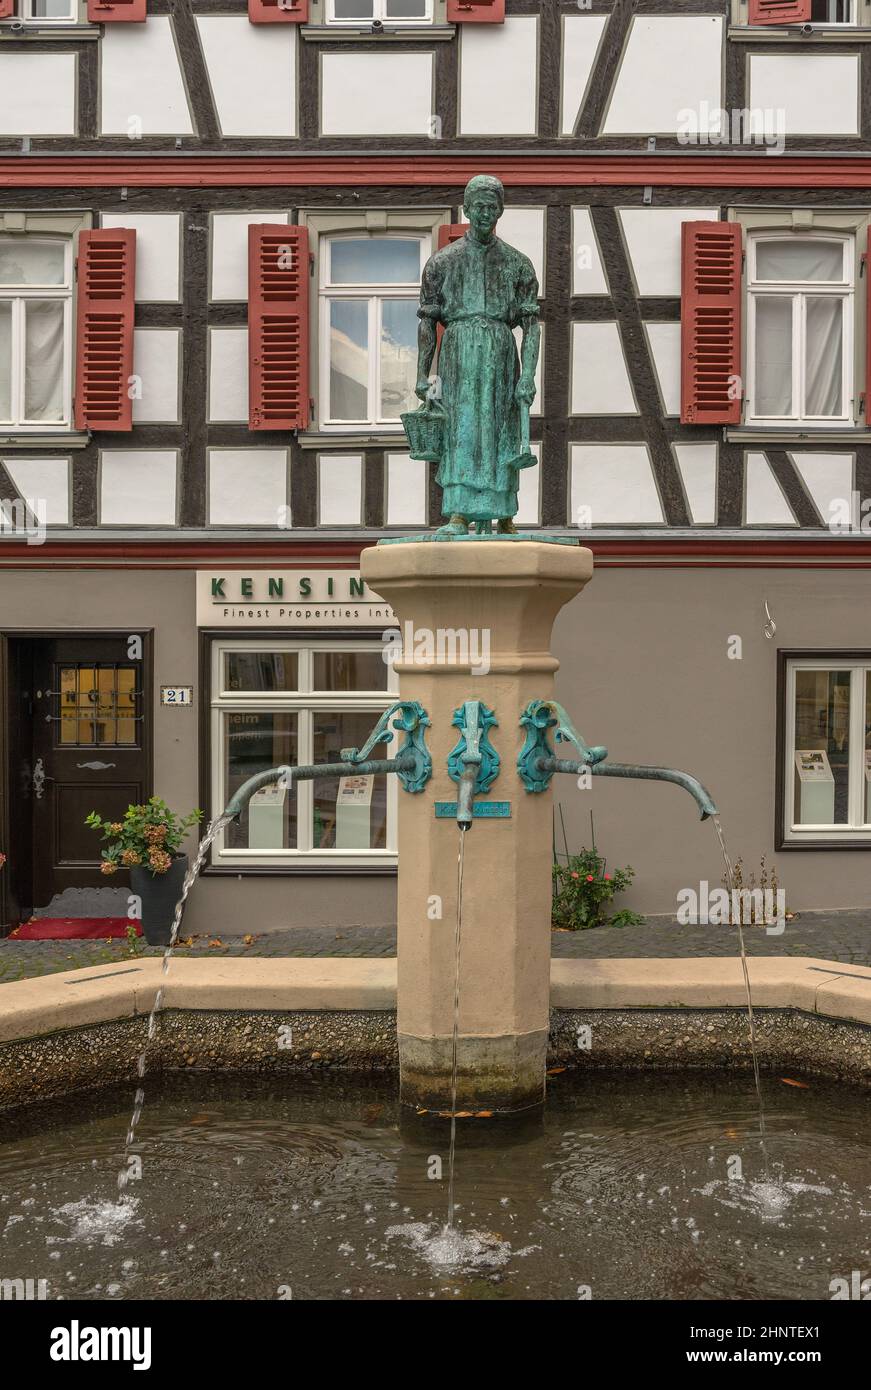 Fontaine avec sculpture dans la vieille ville historique, Kronberg im Taunus, Allemagne Banque D'Images